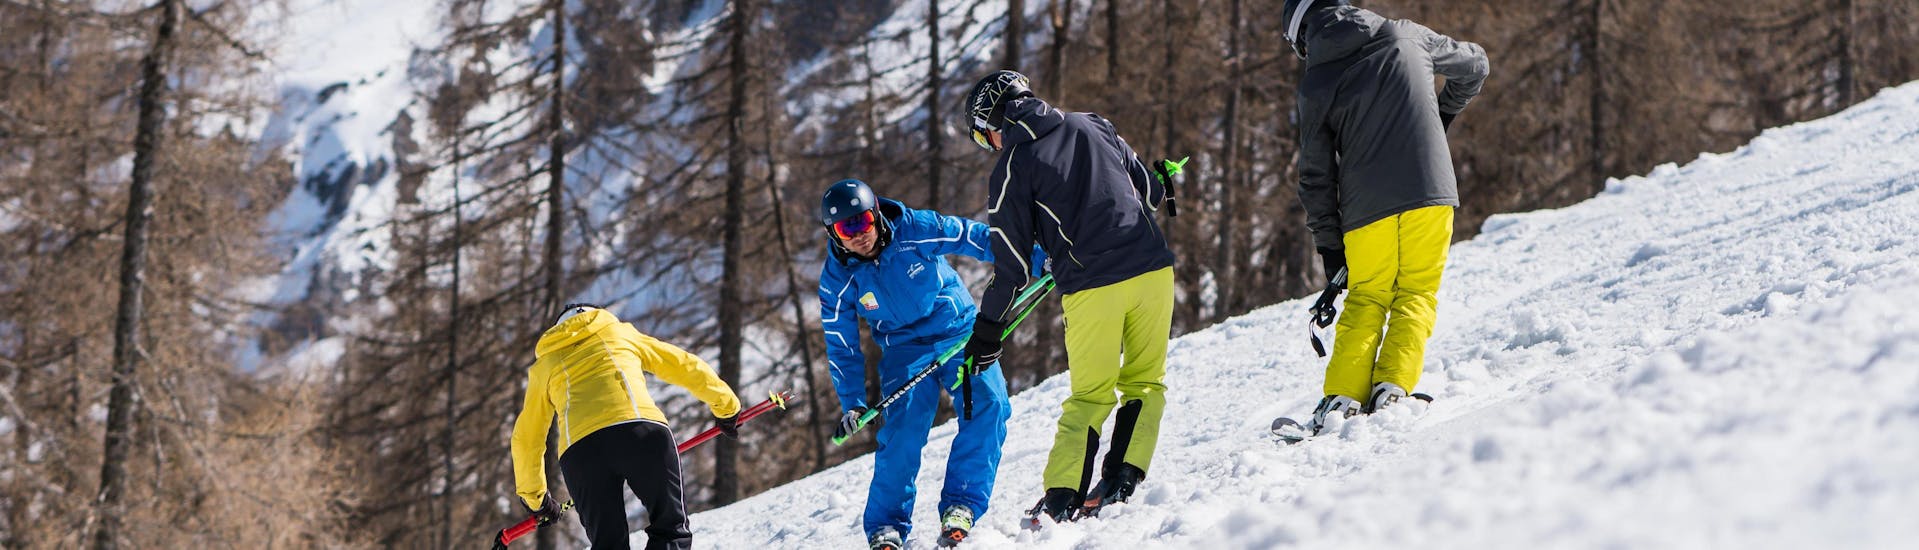 Privélessen skiën voor volwassenen - Alle niveaus.